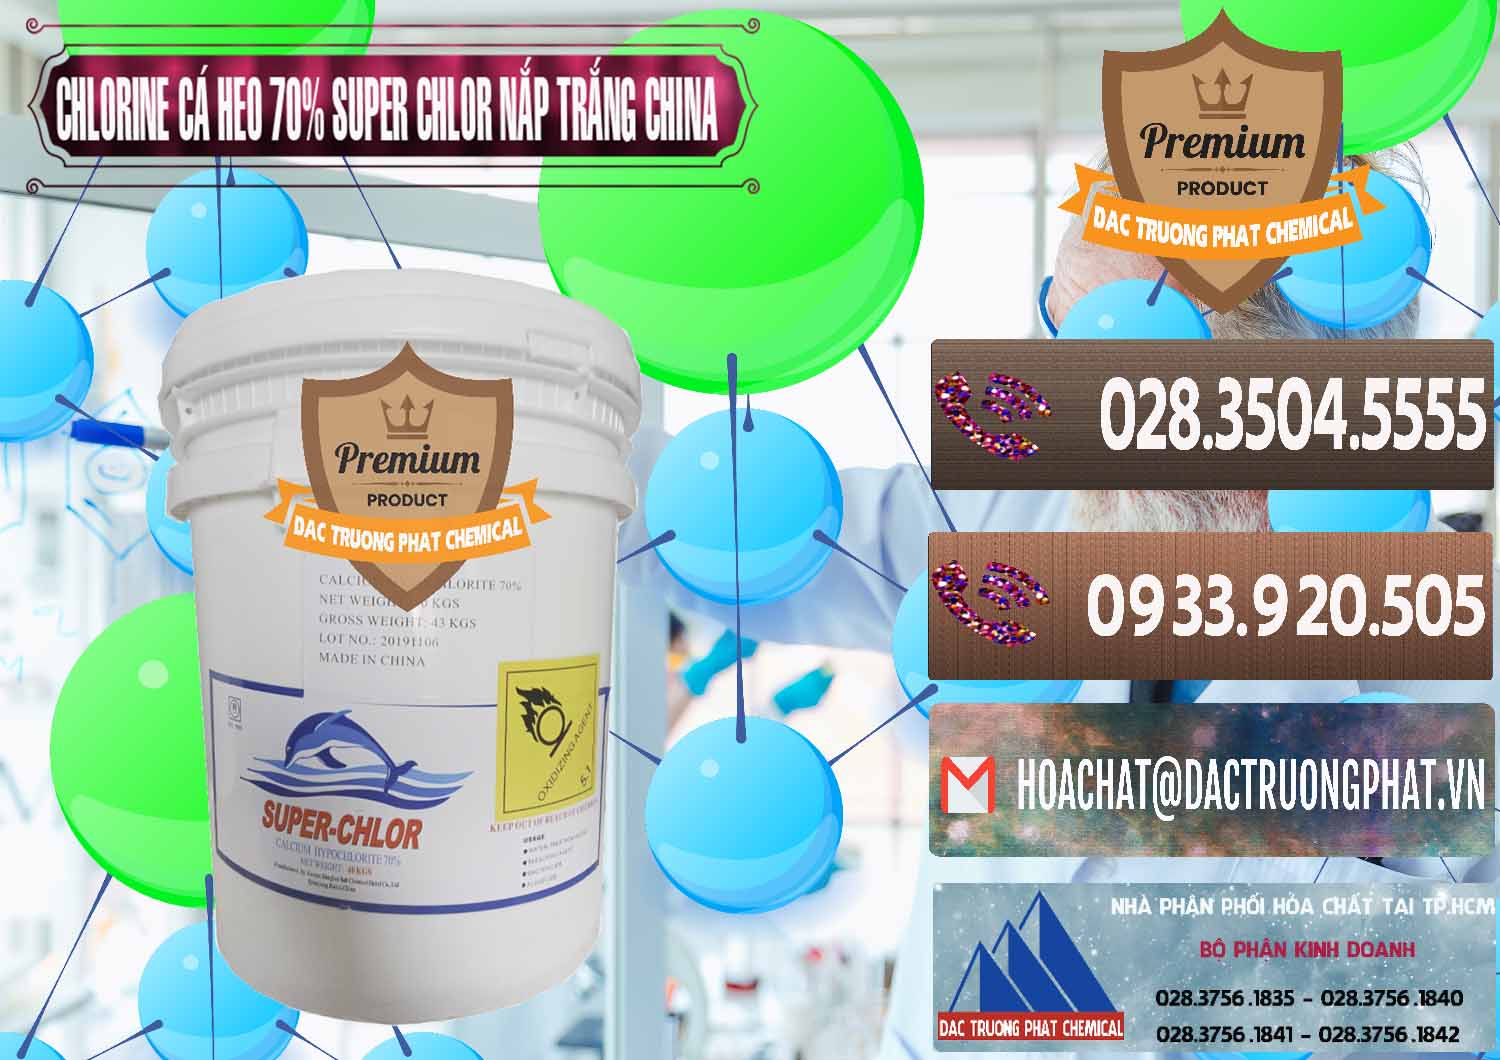 Cty bán ( cung cấp ) Clorin - Chlorine Cá Heo 70% Super Chlor Nắp Trắng Trung Quốc China - 0240 - Công ty chuyên nhập khẩu - phân phối hóa chất tại TP.HCM - hoachatviet.net